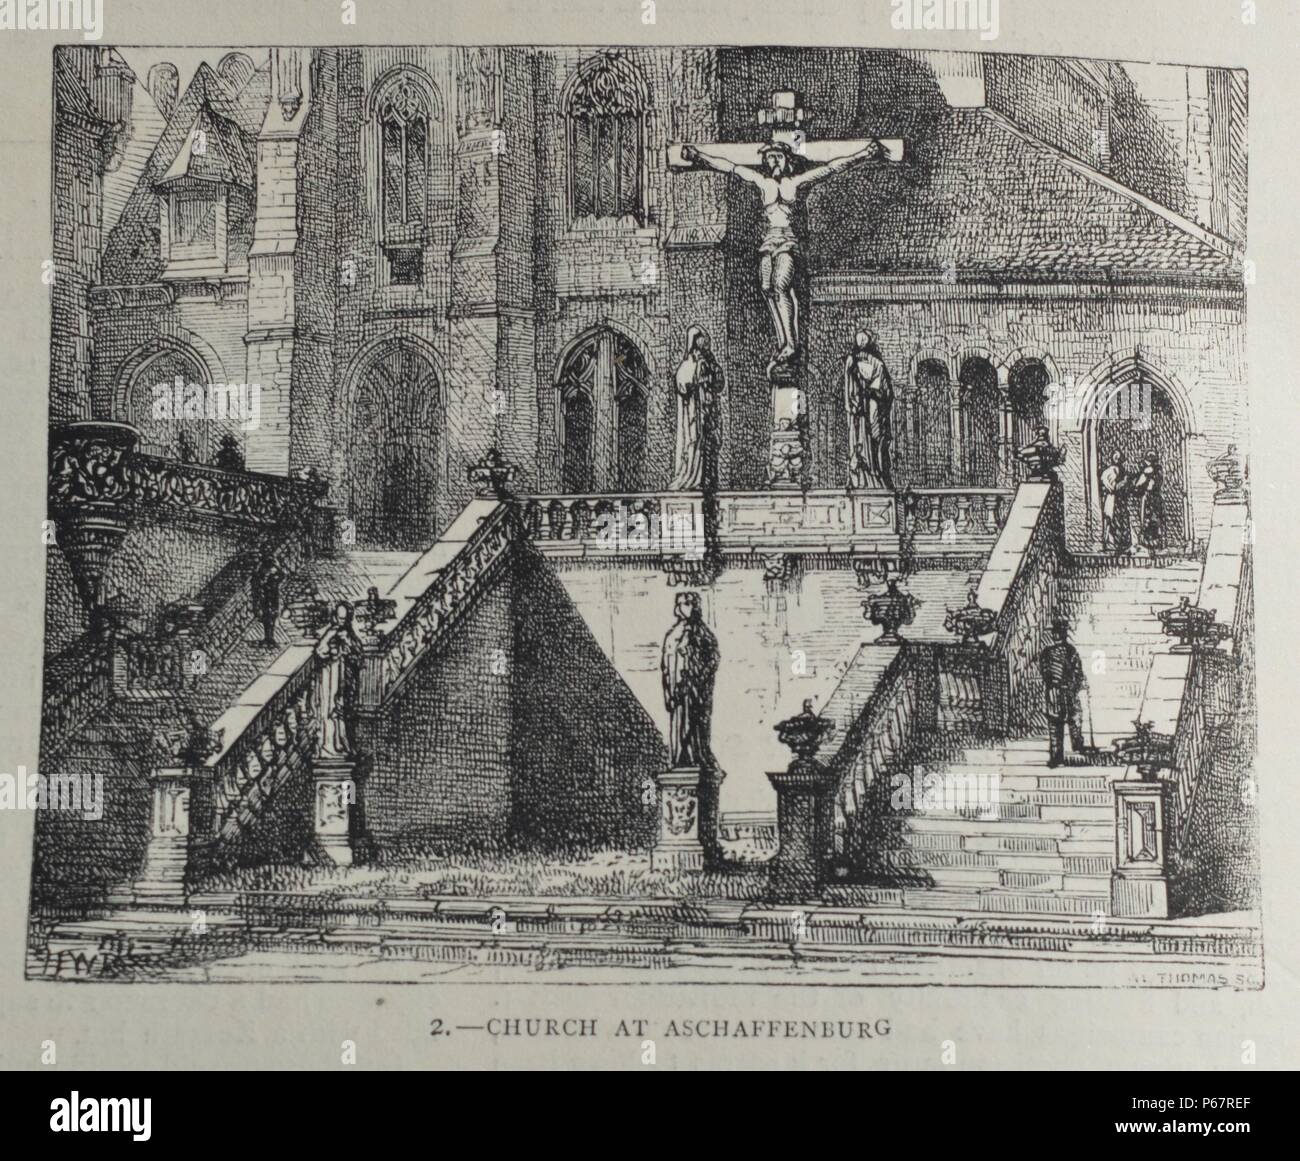 Incisione di la Chiesa Collegiata di San Pietro e Alexander. La chiesa più antica di Aschaffenburg risale al X secolo. Datata 1870 Foto Stock